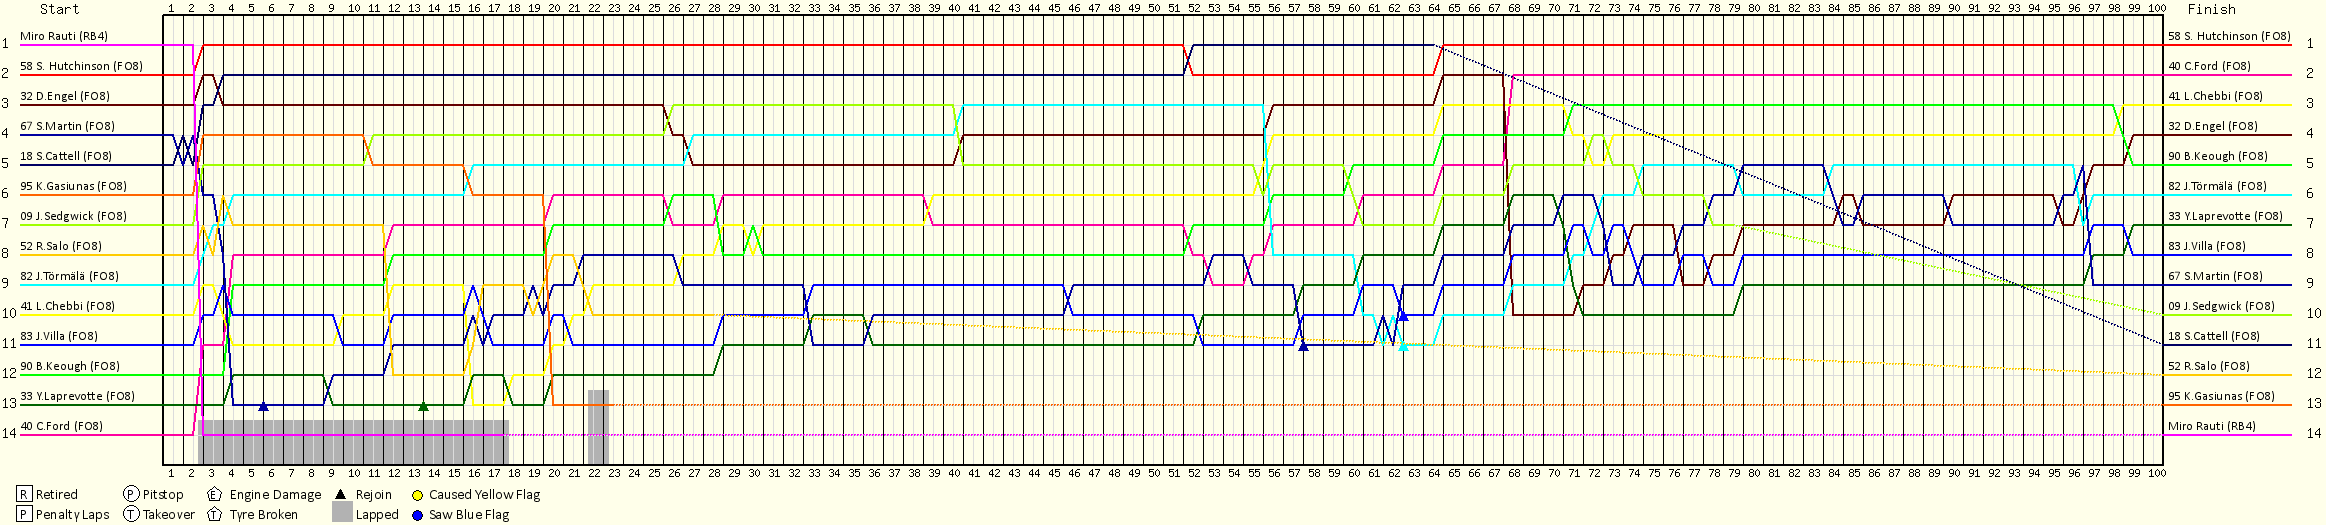 Lap by Lap Chart